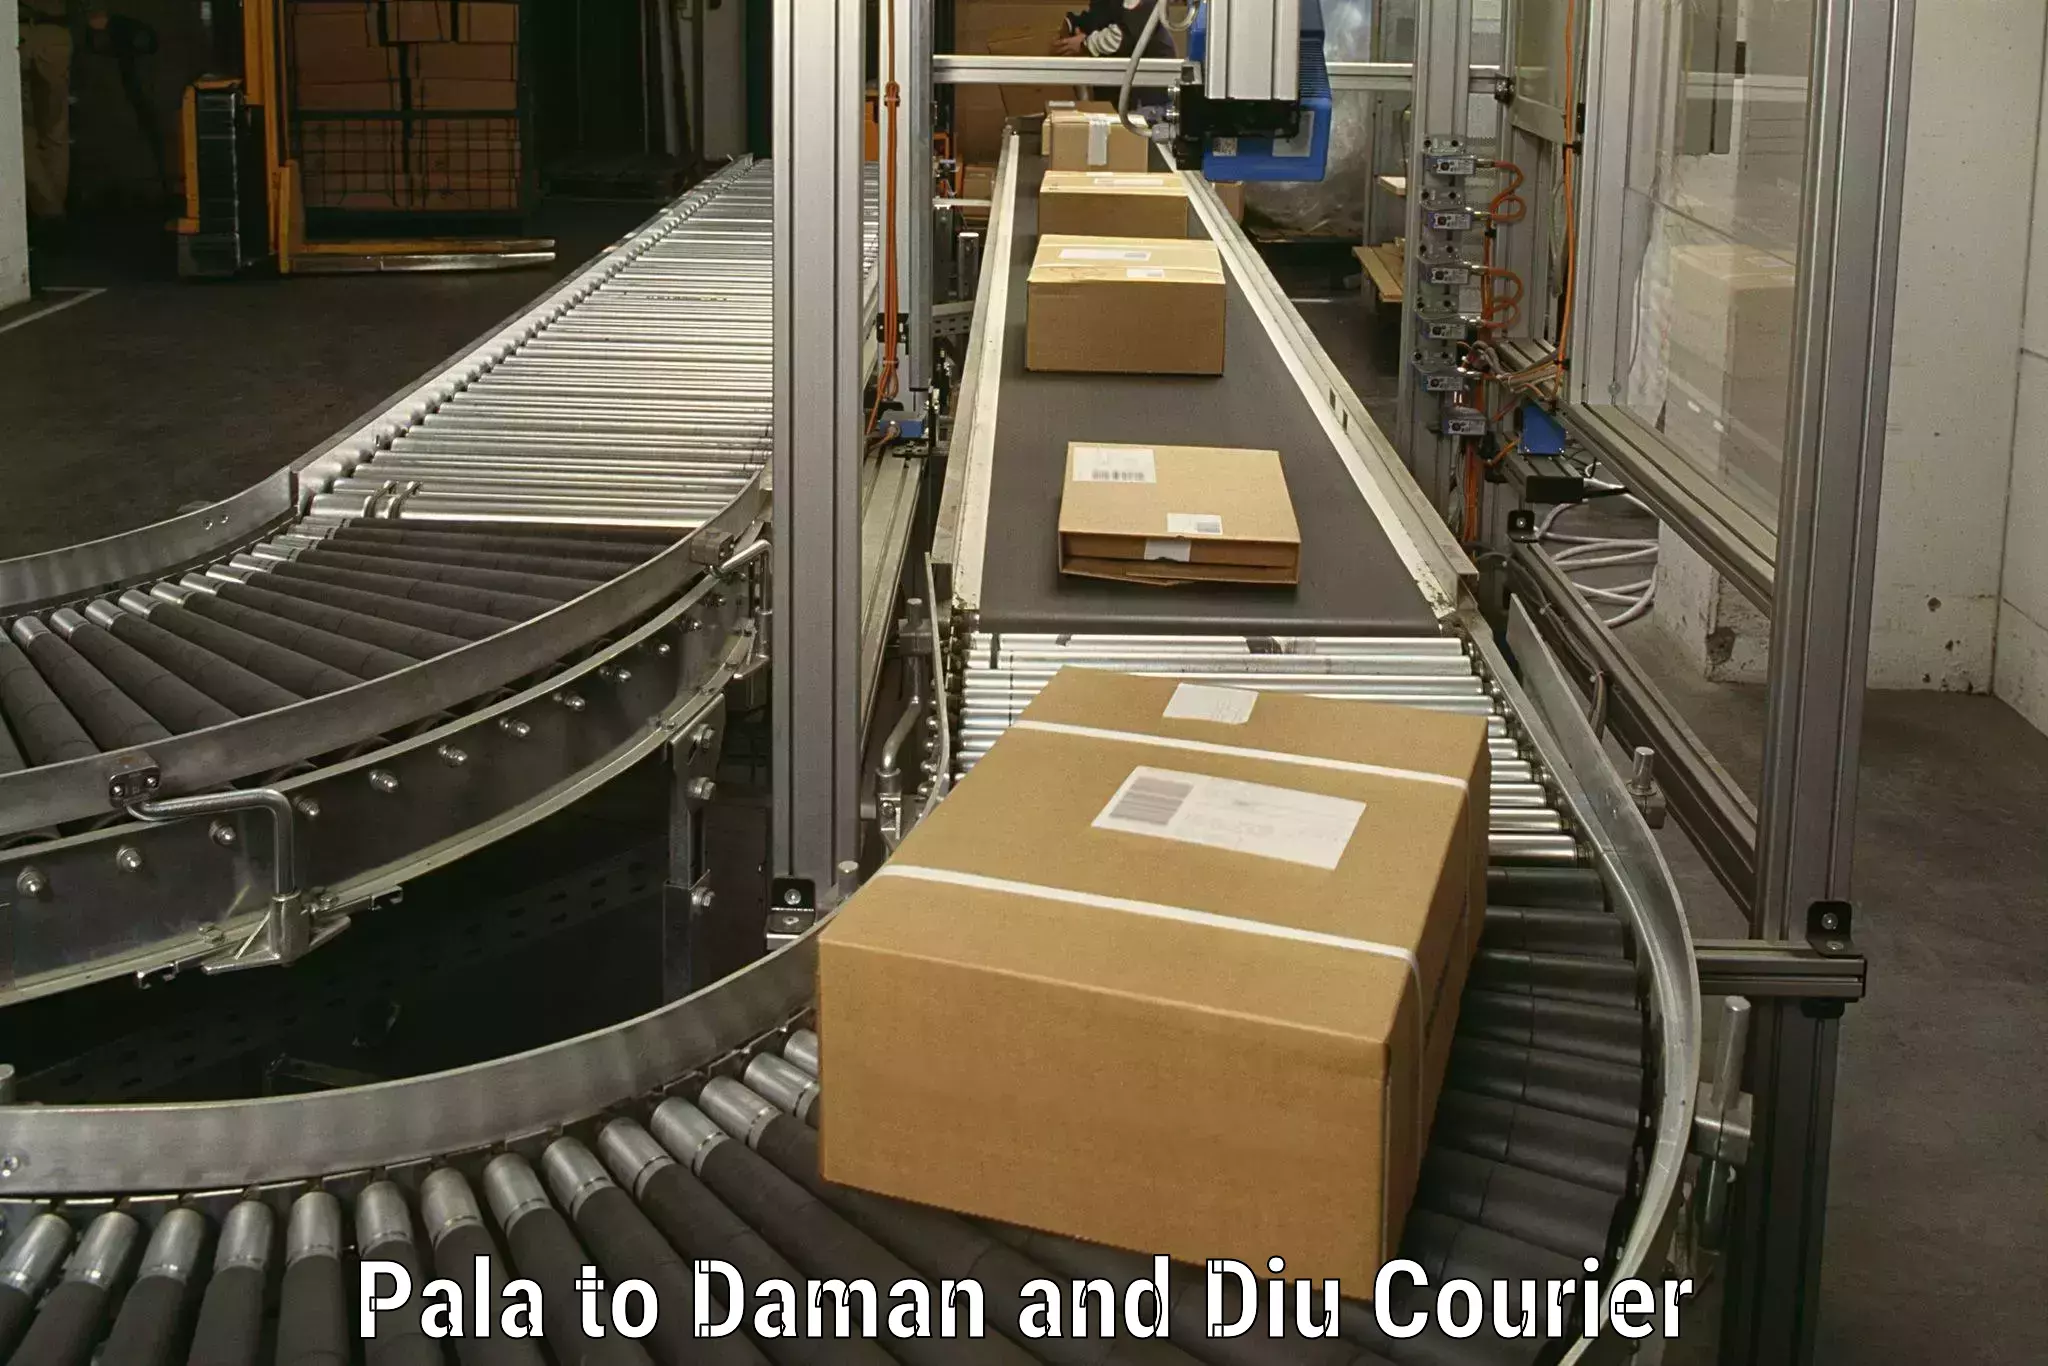 Expert goods movers Pala to Diu